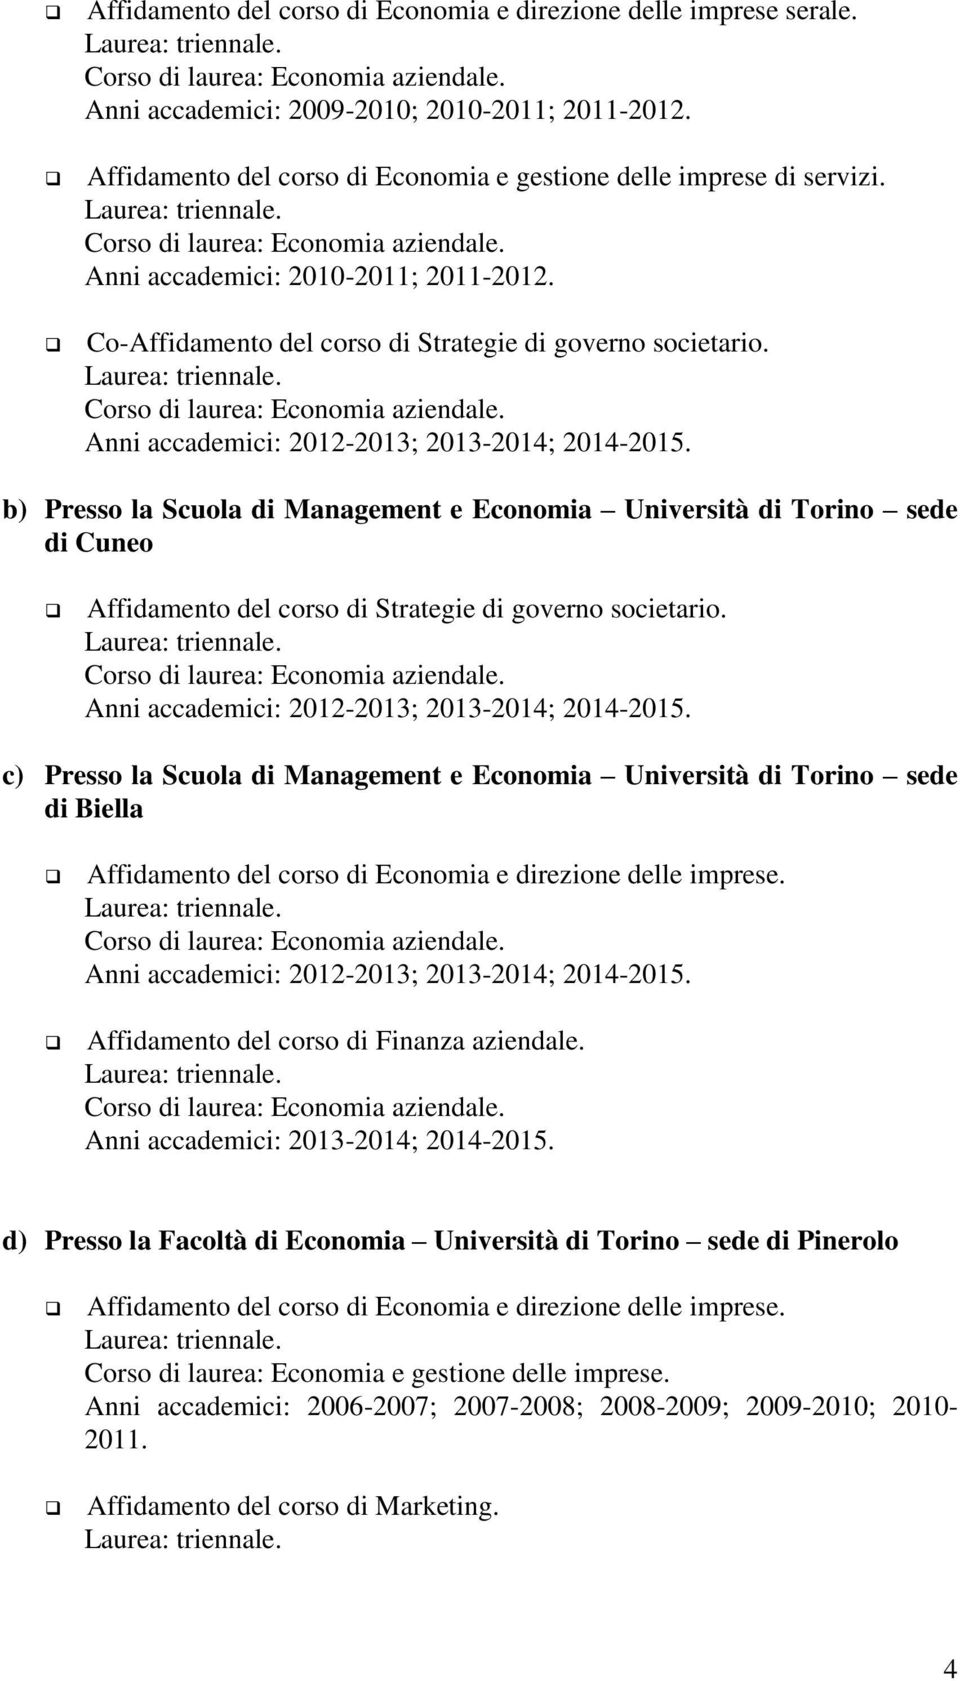 Co-Affidamento del corso di Strategie di governo societario. Corso di laurea: Economia aziendale. Anni accademici: 2012-2013; 2013-2014; 2014-2015.